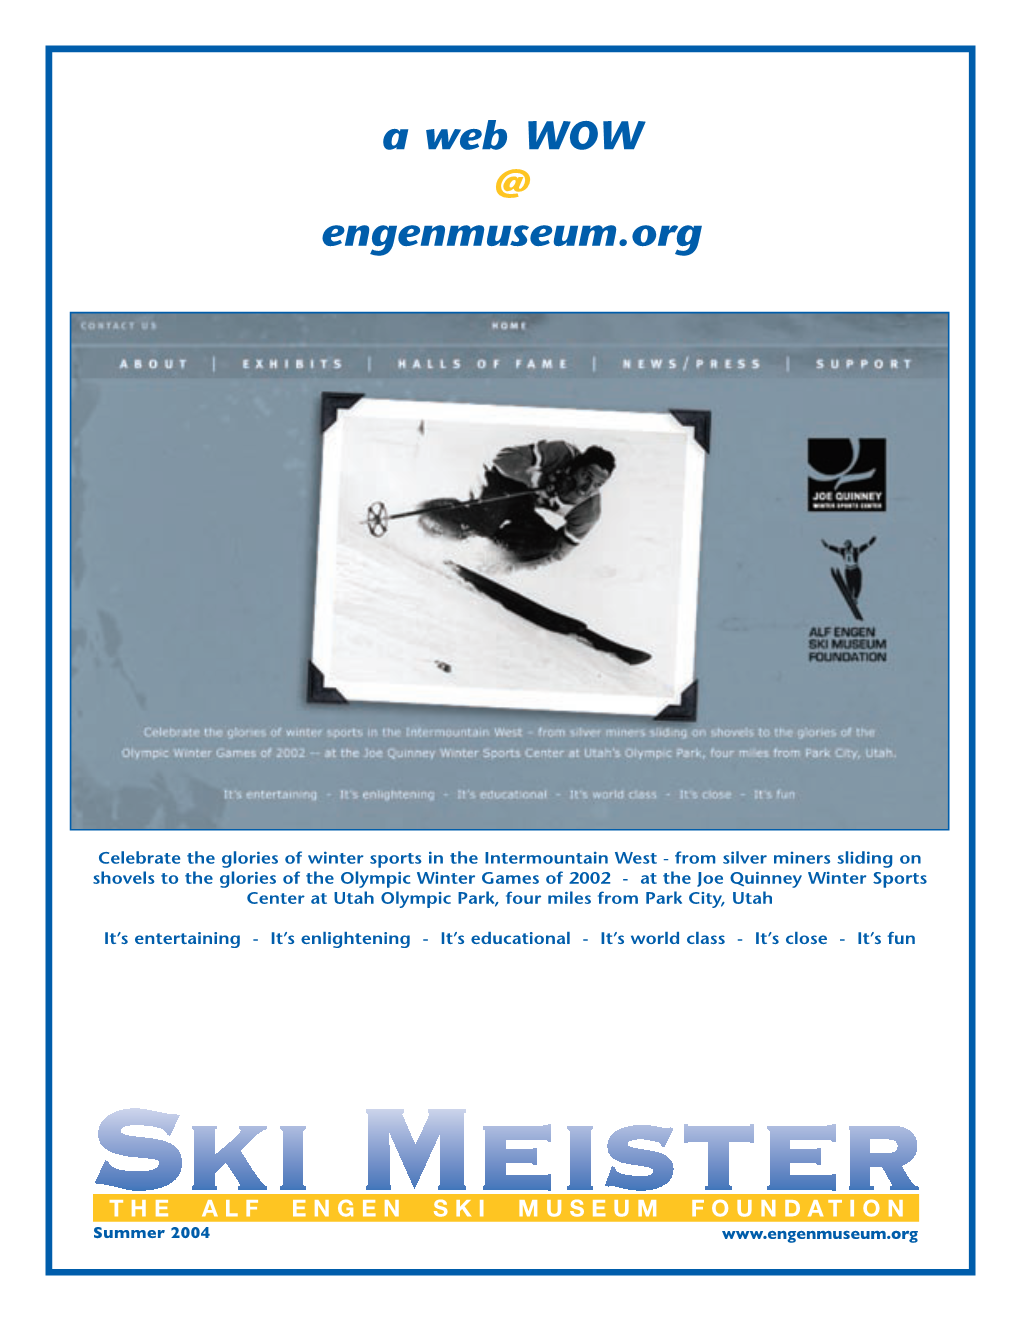 Ski Meister Summer 04.Indd